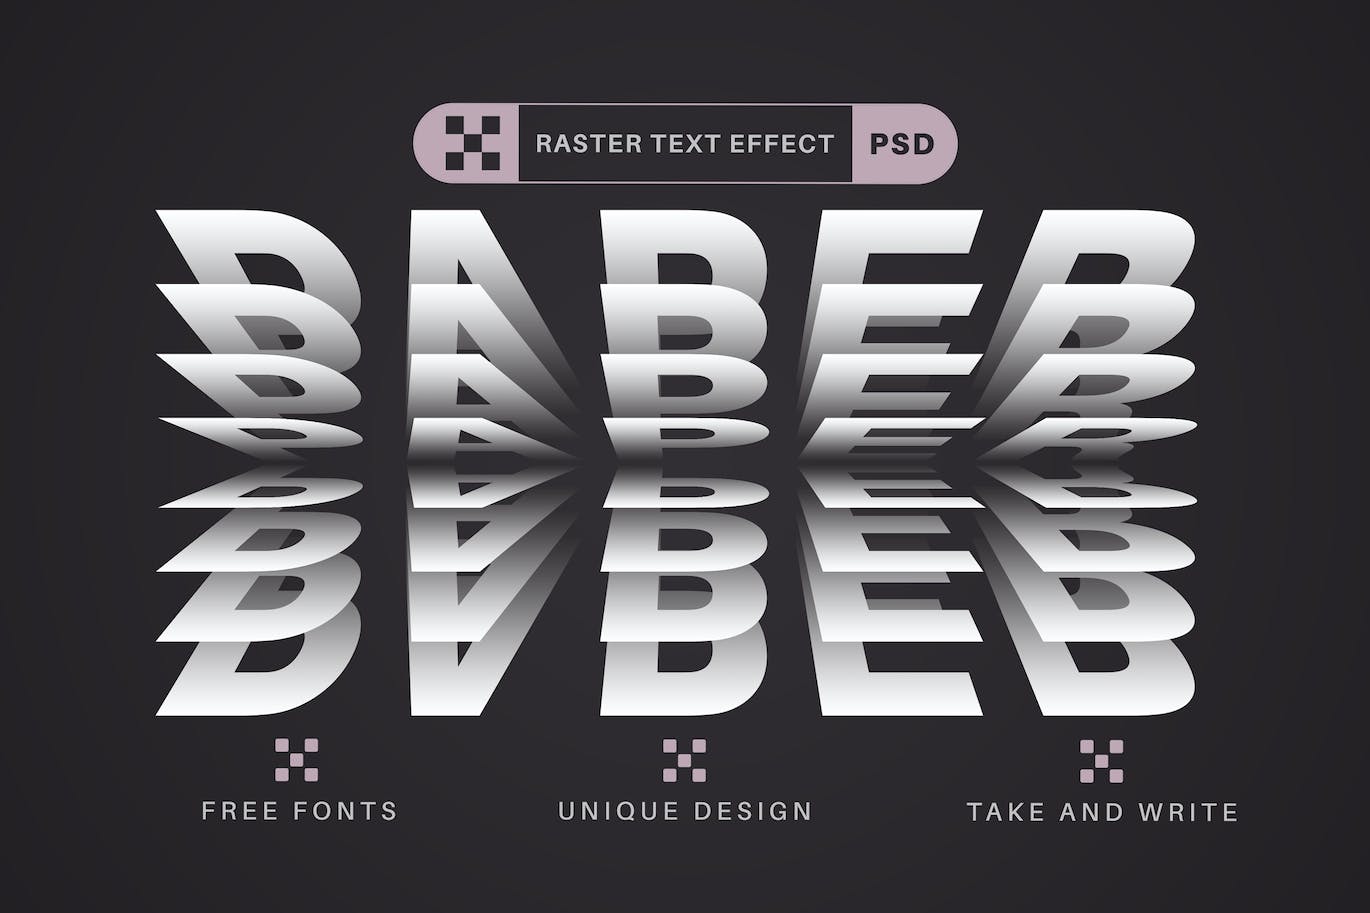 堆叠纸张文字效果字体样式 Paper Rustle – Editable Text Effect, Font Style 插件预设 第1张